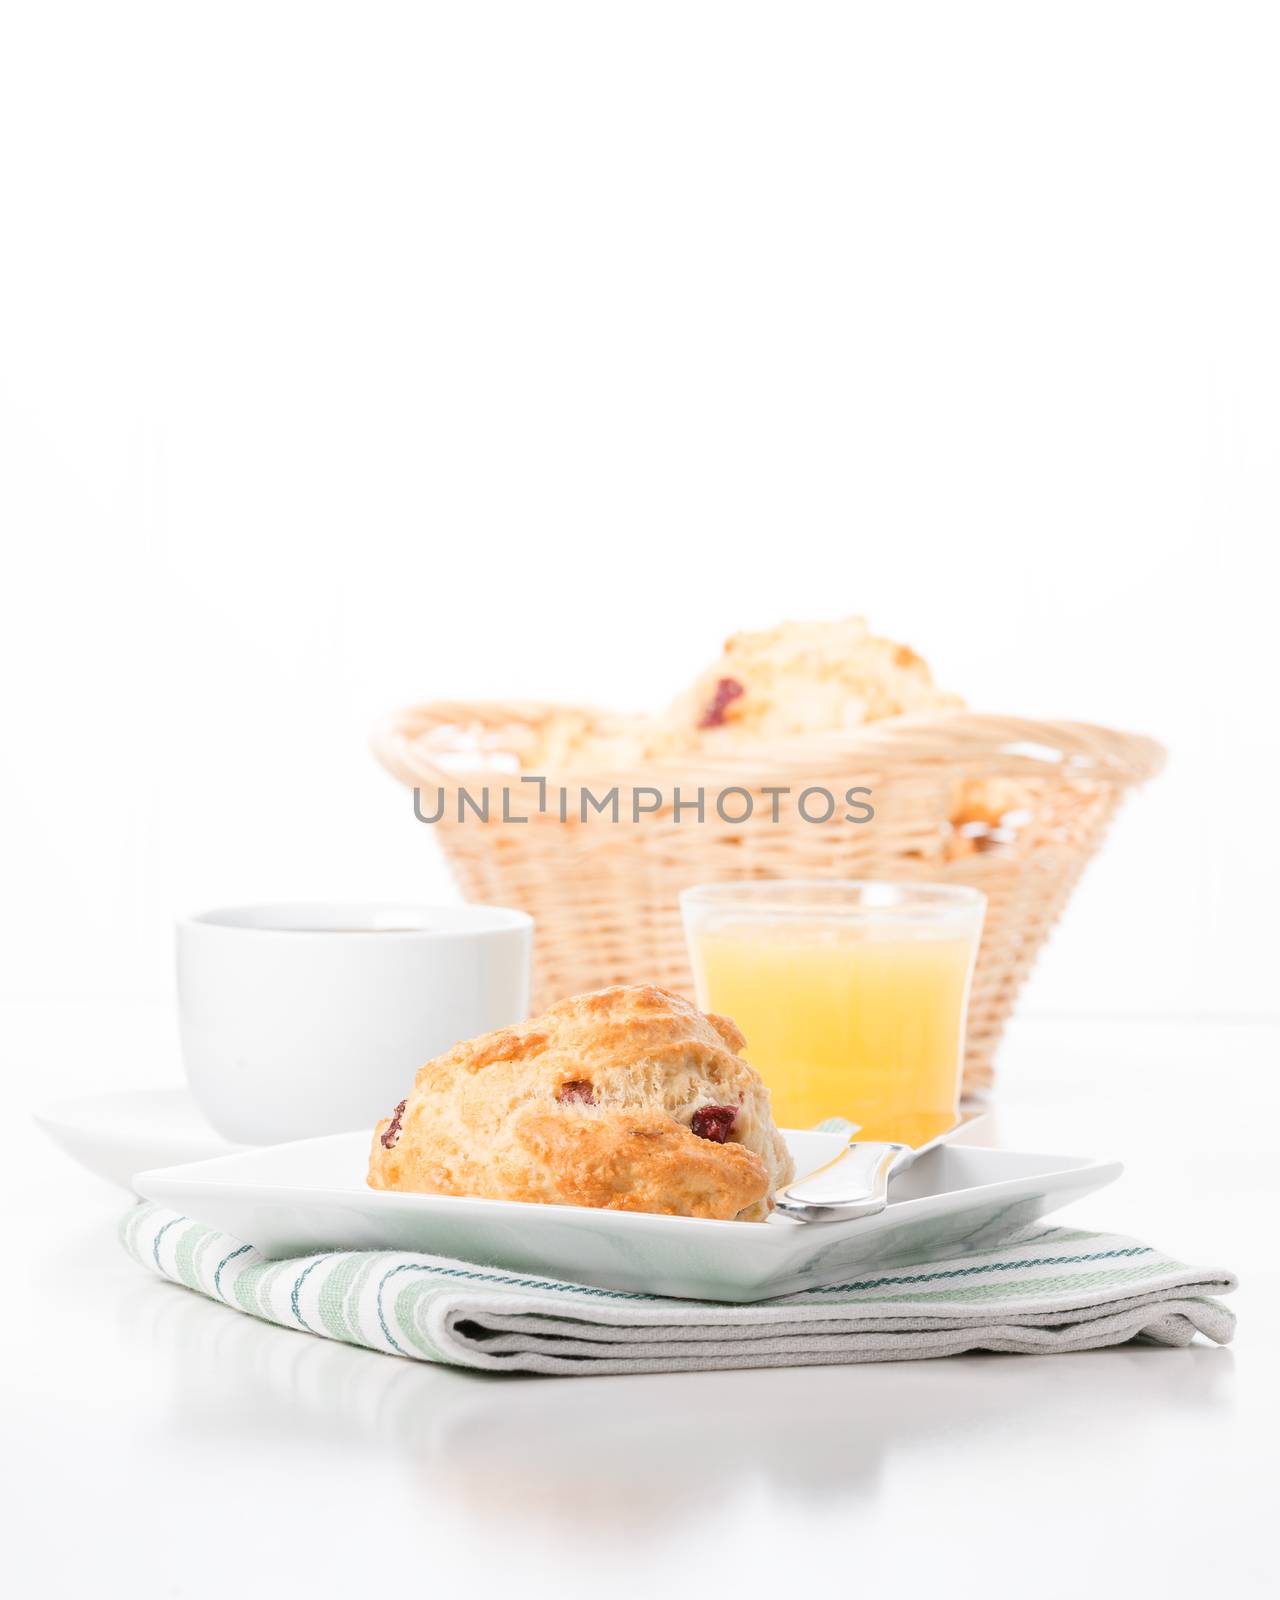 Scone Breakfast Portrait by billberryphotography